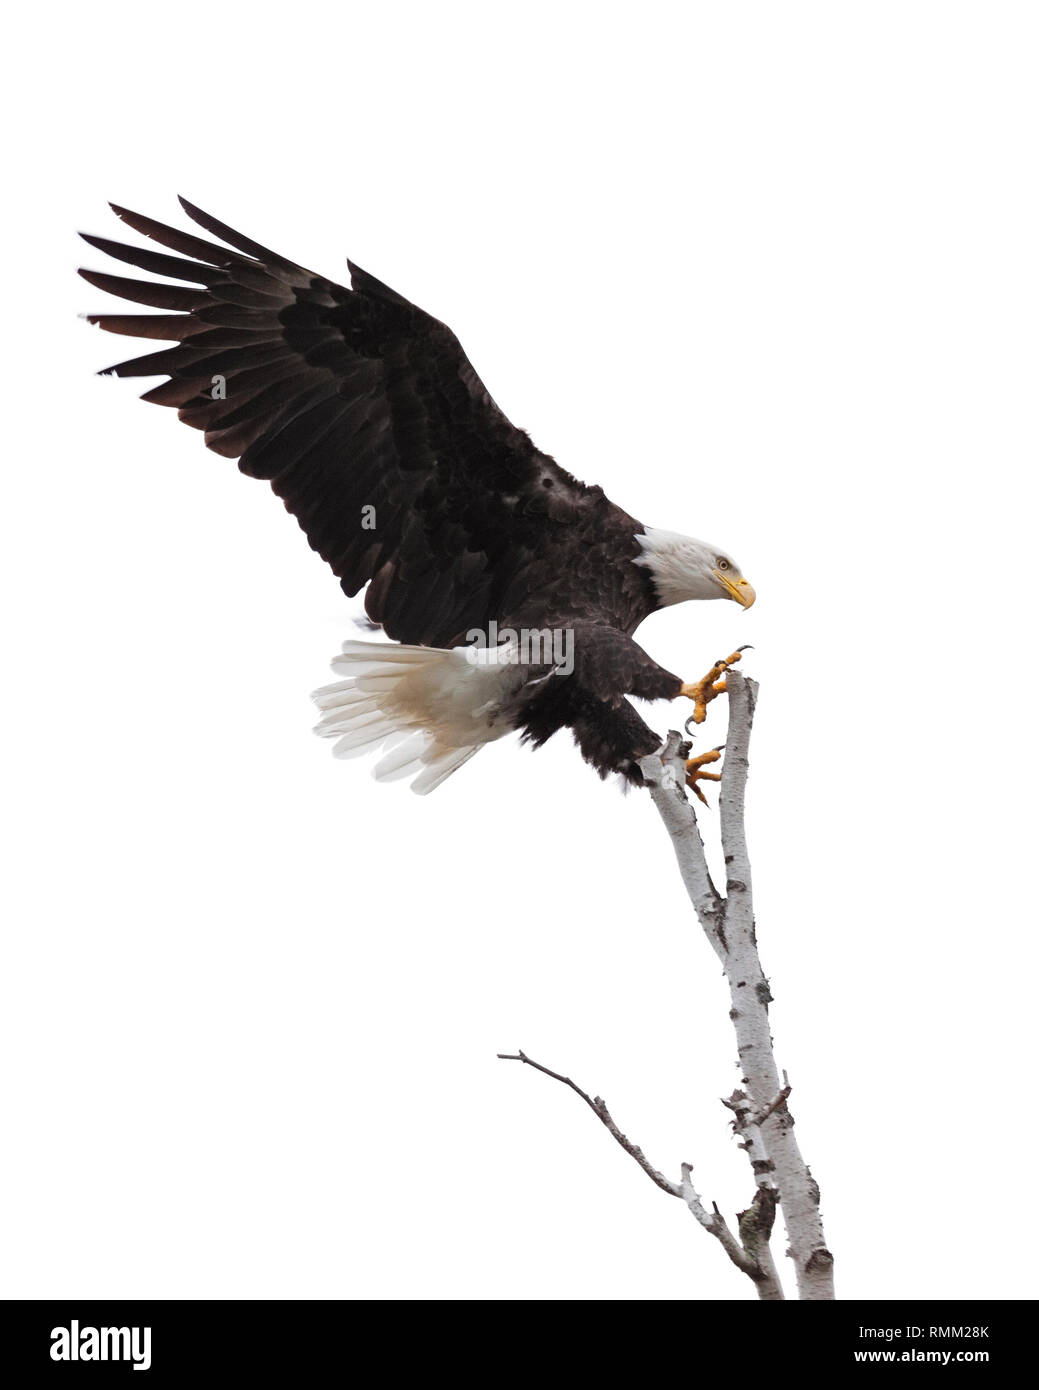 Las alas y las garras extendidas abierto, un águila calva es el láser centrado en aterrizar en la cima de un árbol de abedul. Fondo blanco Foto de stock